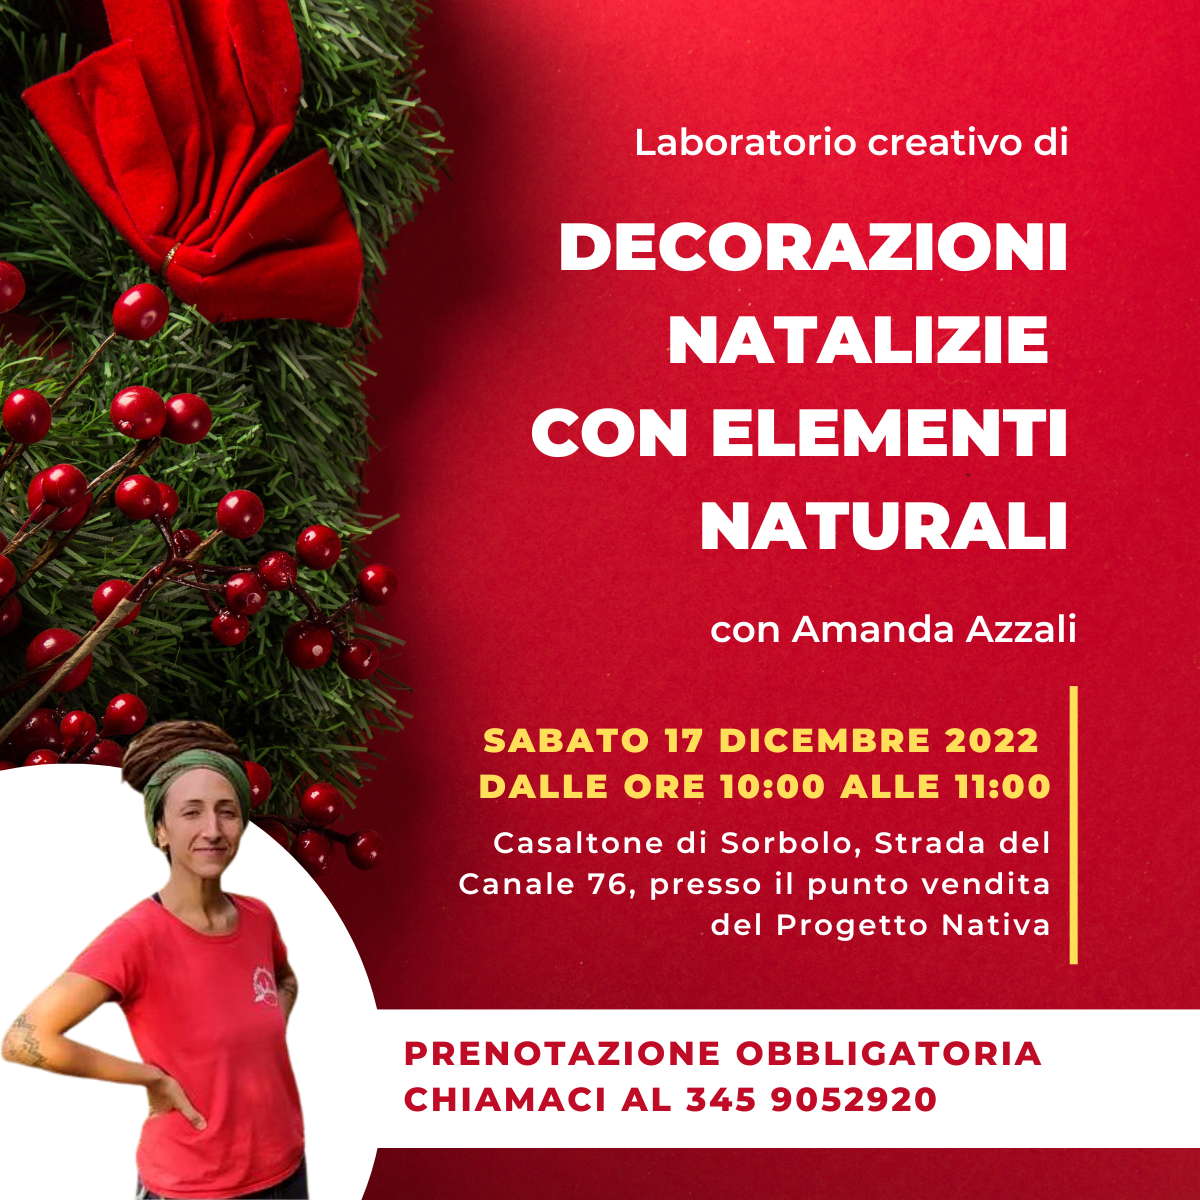 Laboratorio creativo: decorazioni natalizie con elementi naturali